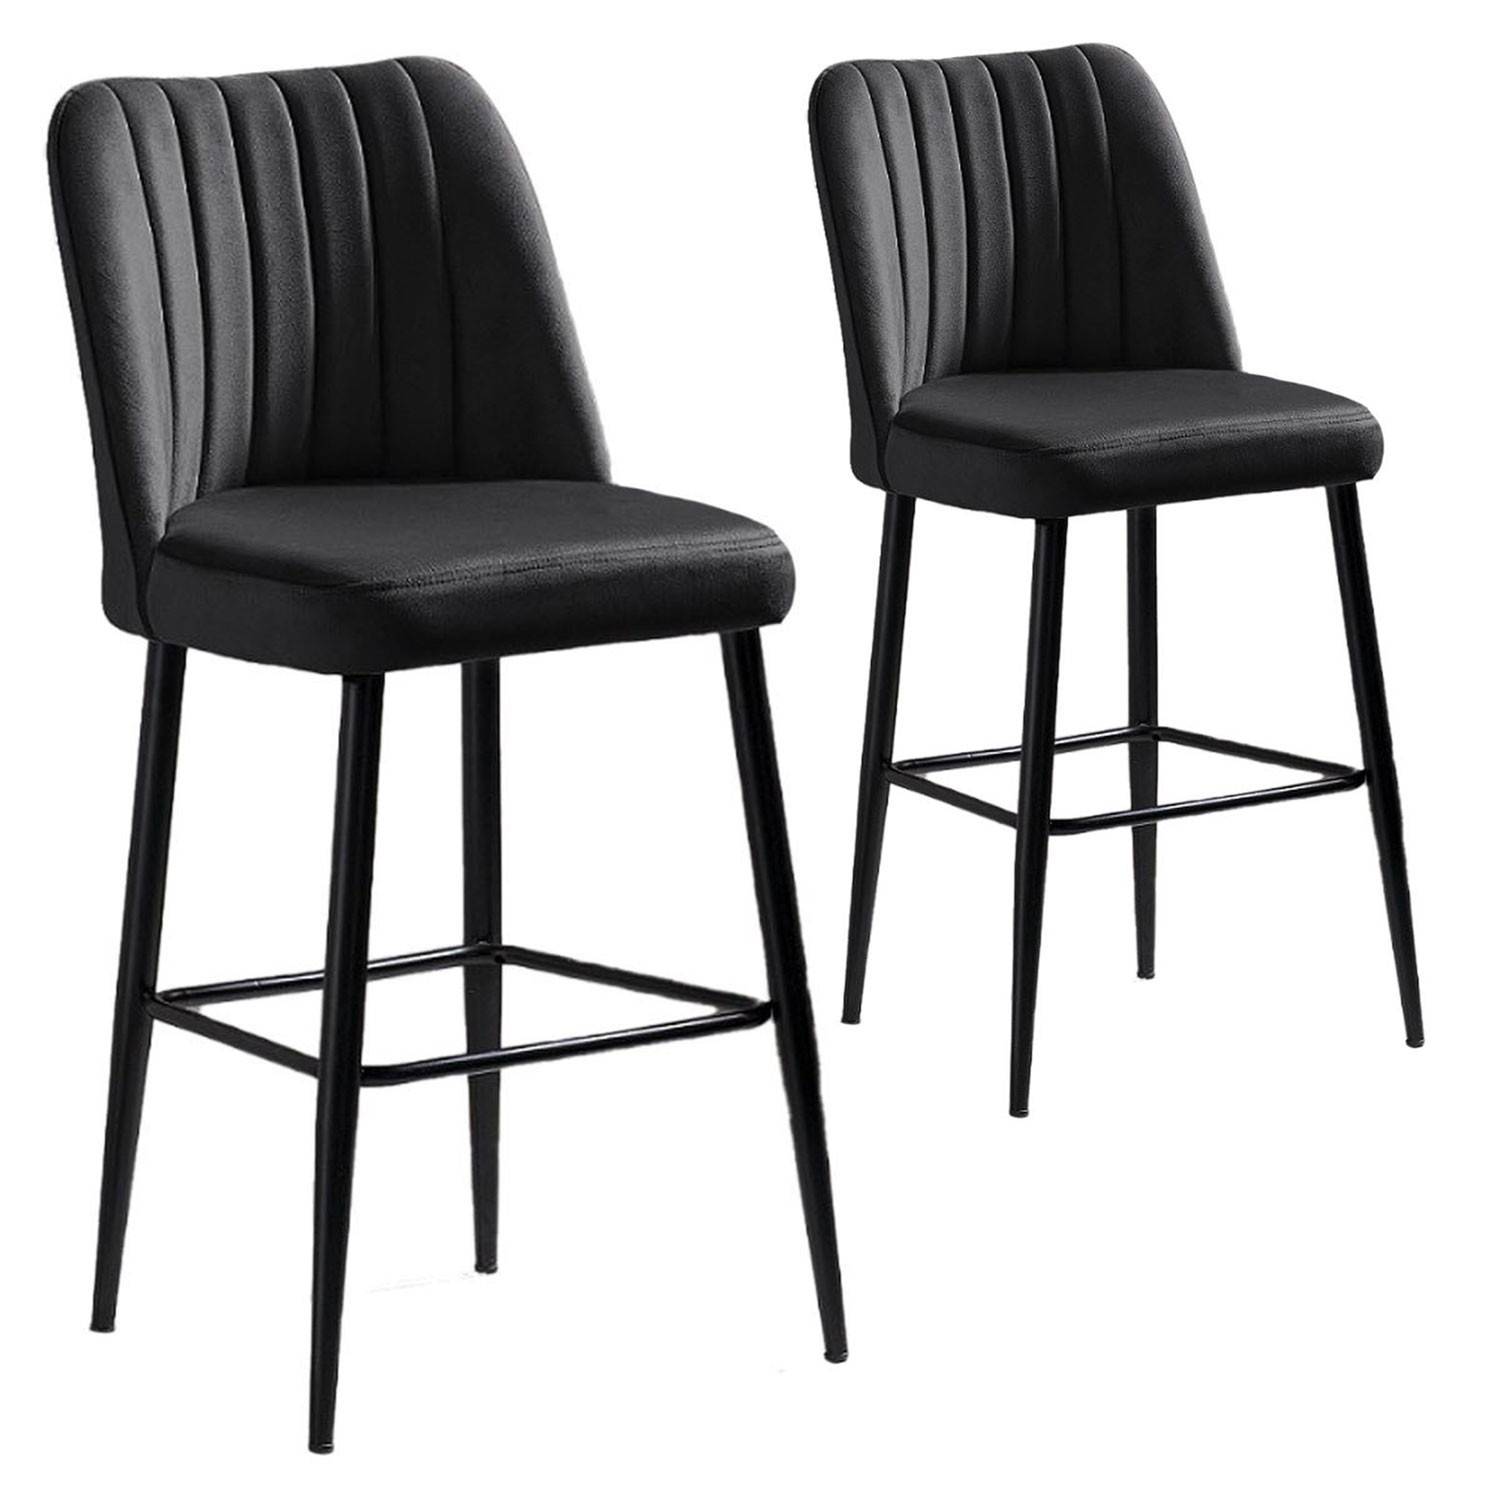 Lote de 2 sillas de bar Sero de terciopelo antracita y metal negro